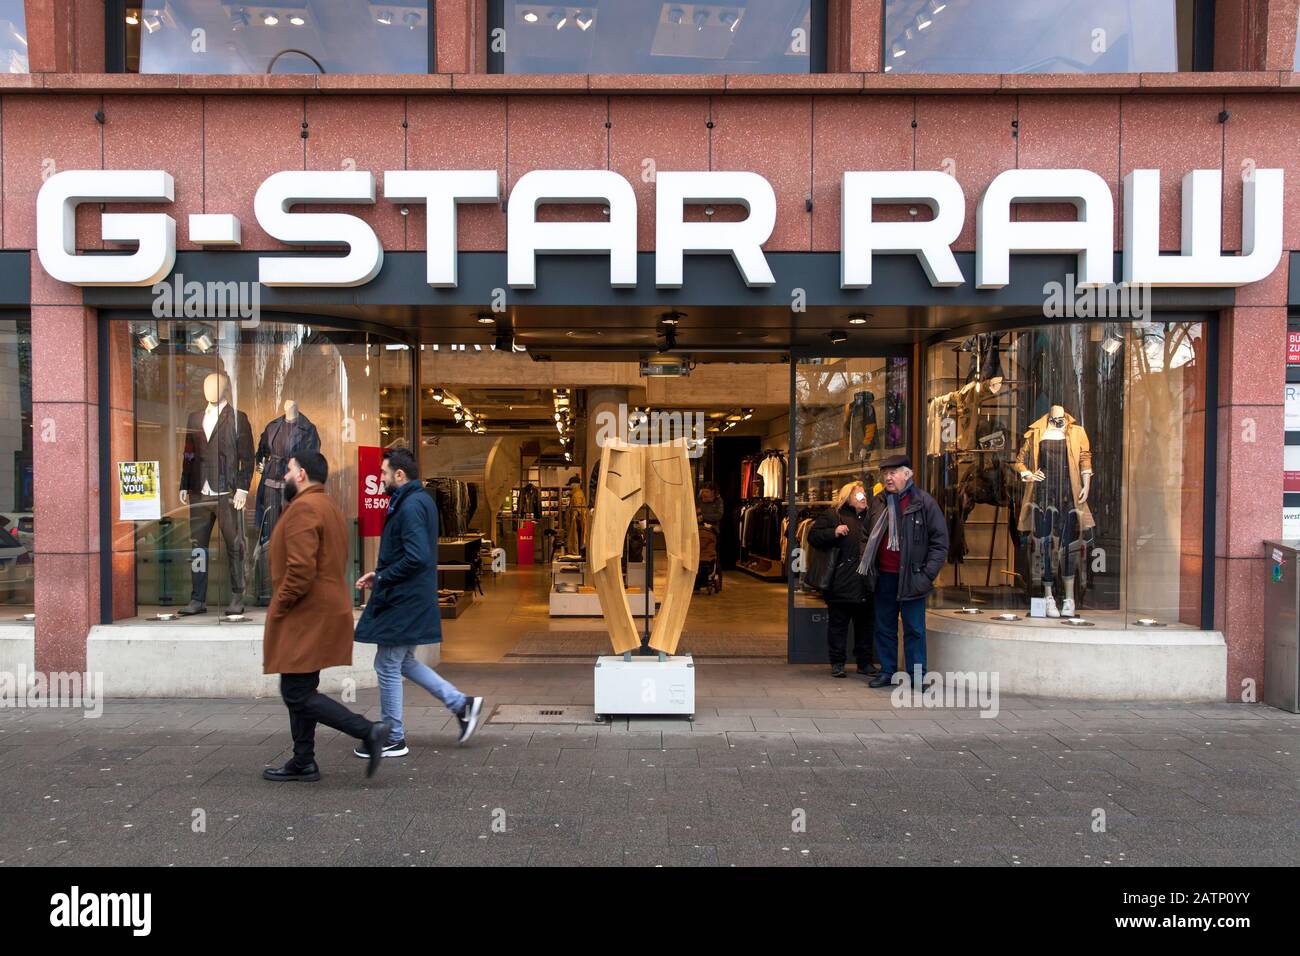 fashion store G-Star Raw on Neumarkt, Cologne, Germany.  Modegeschaeft G-Star Raw am Neumarkt, Koeln, Deutschland. Stock Photo